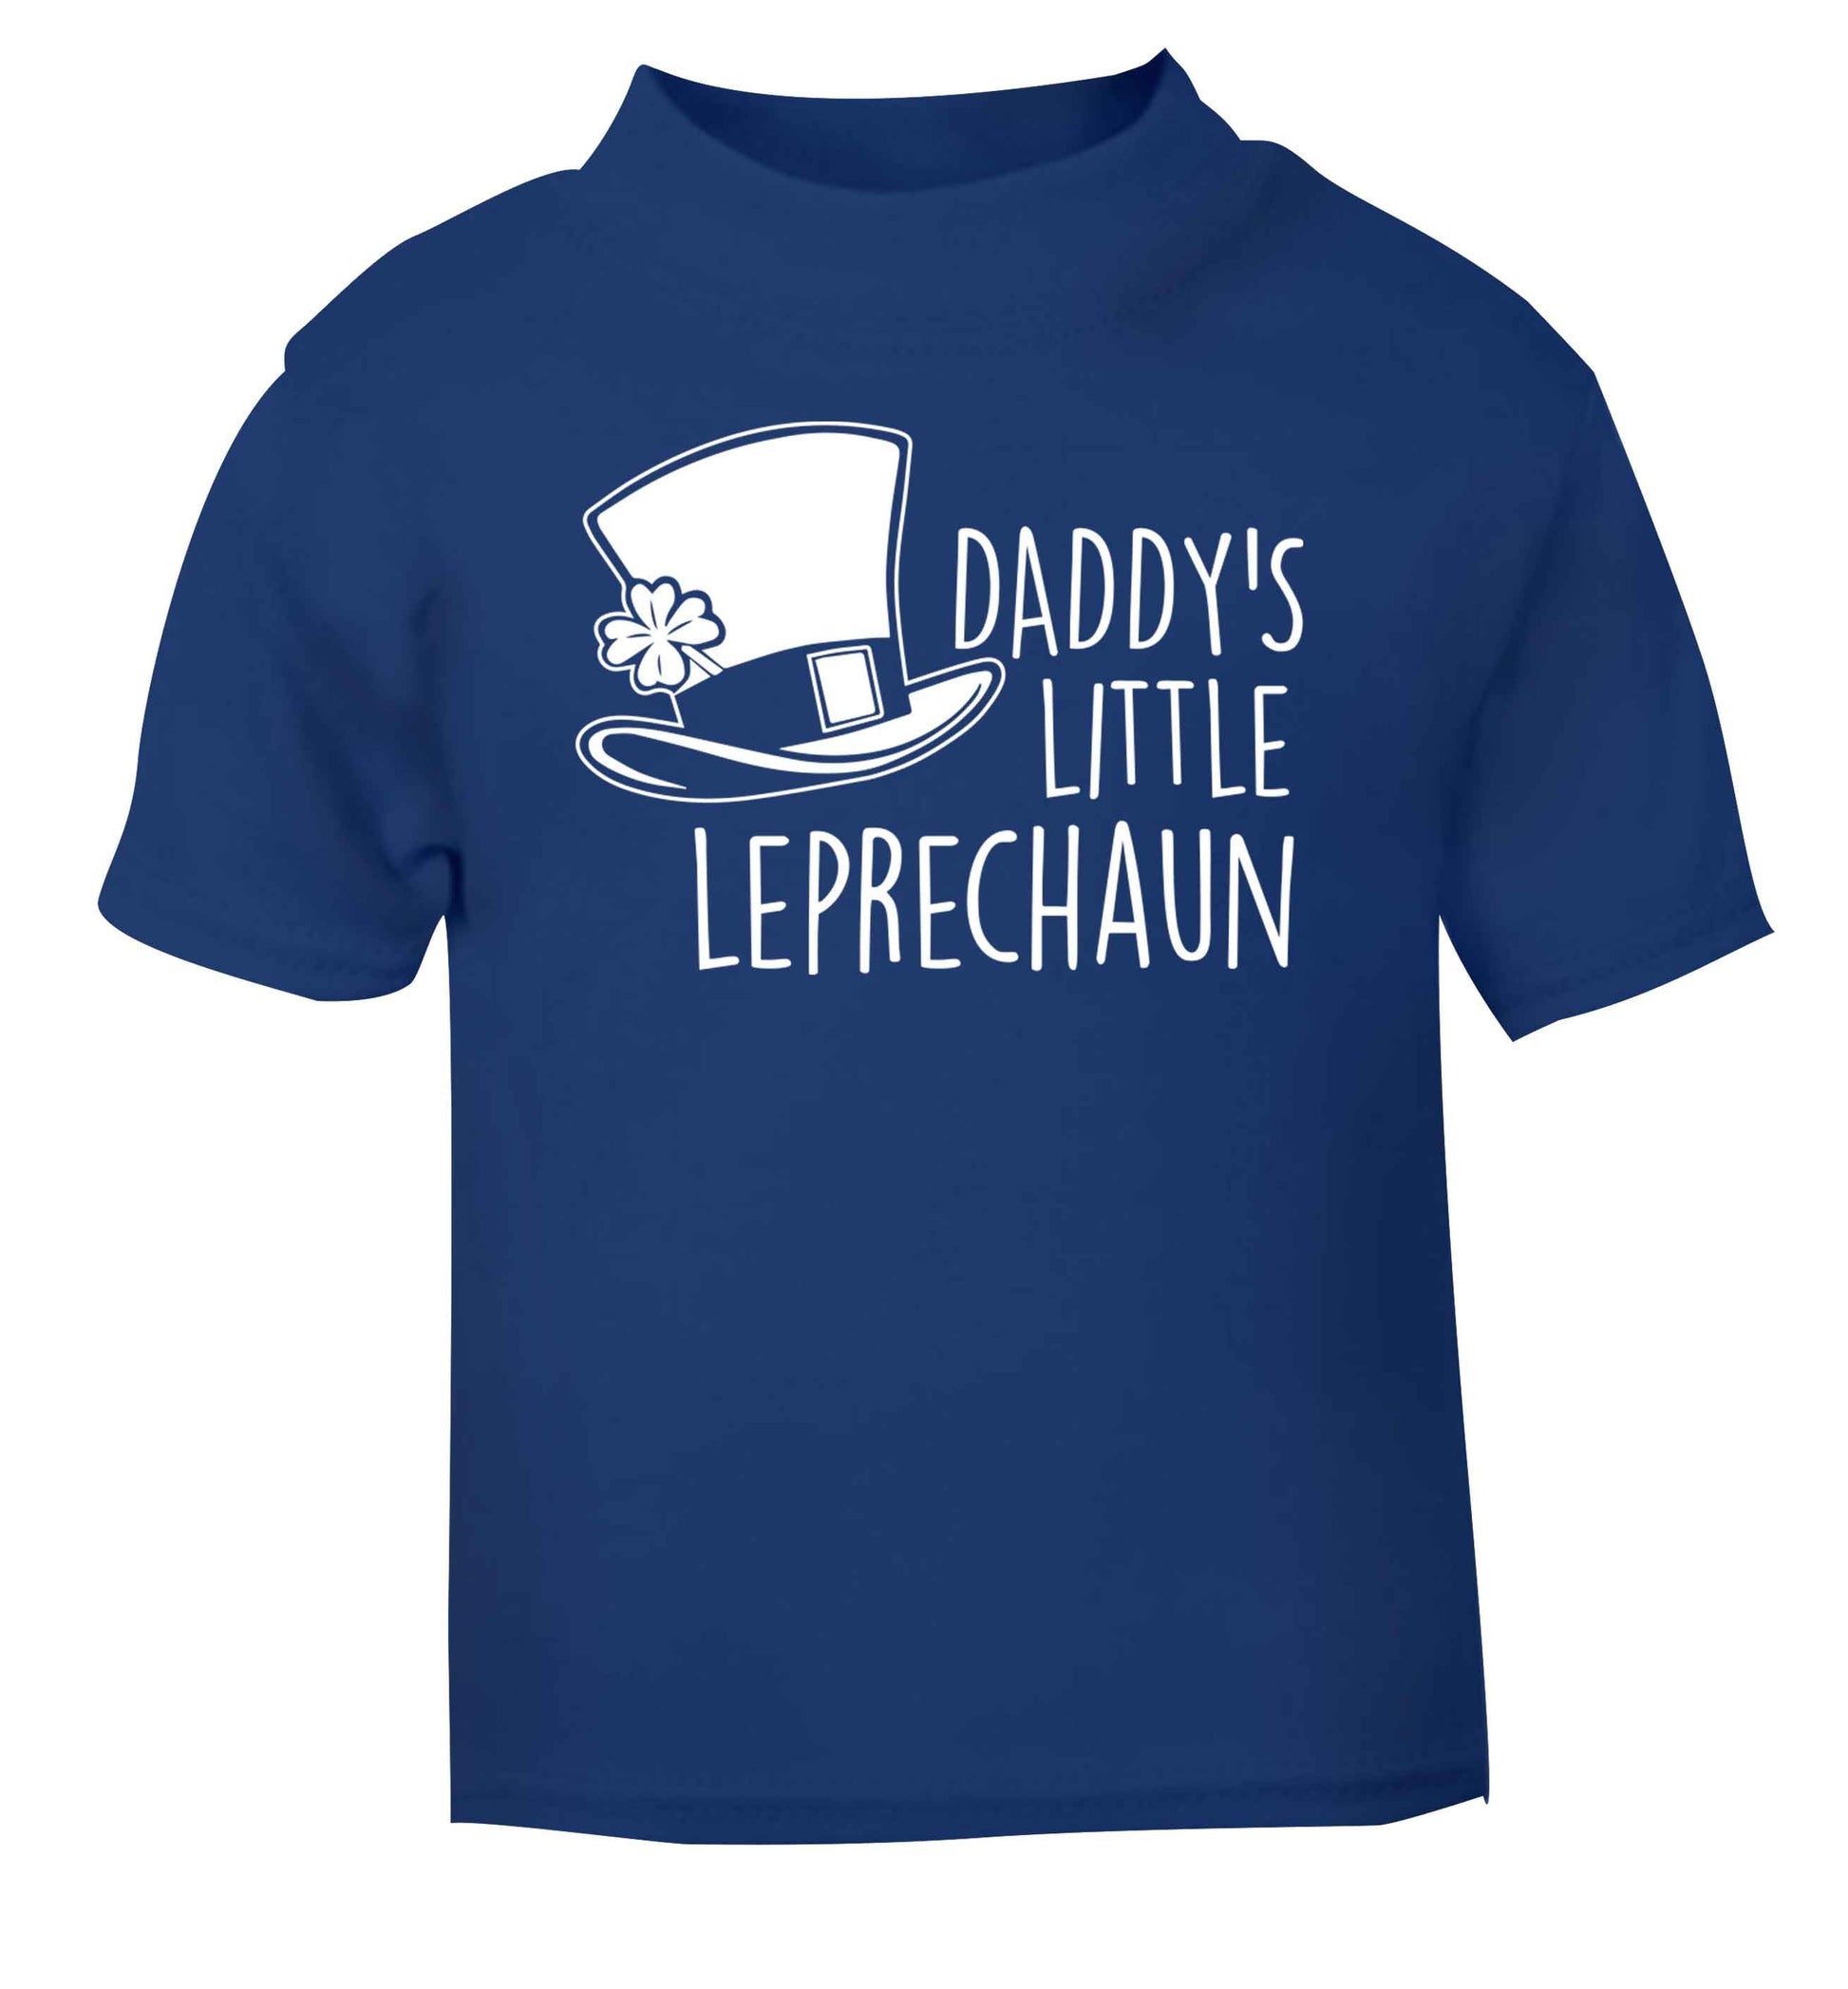 Daddy's little leprechaun blue baby toddler Tshirt 2 Years